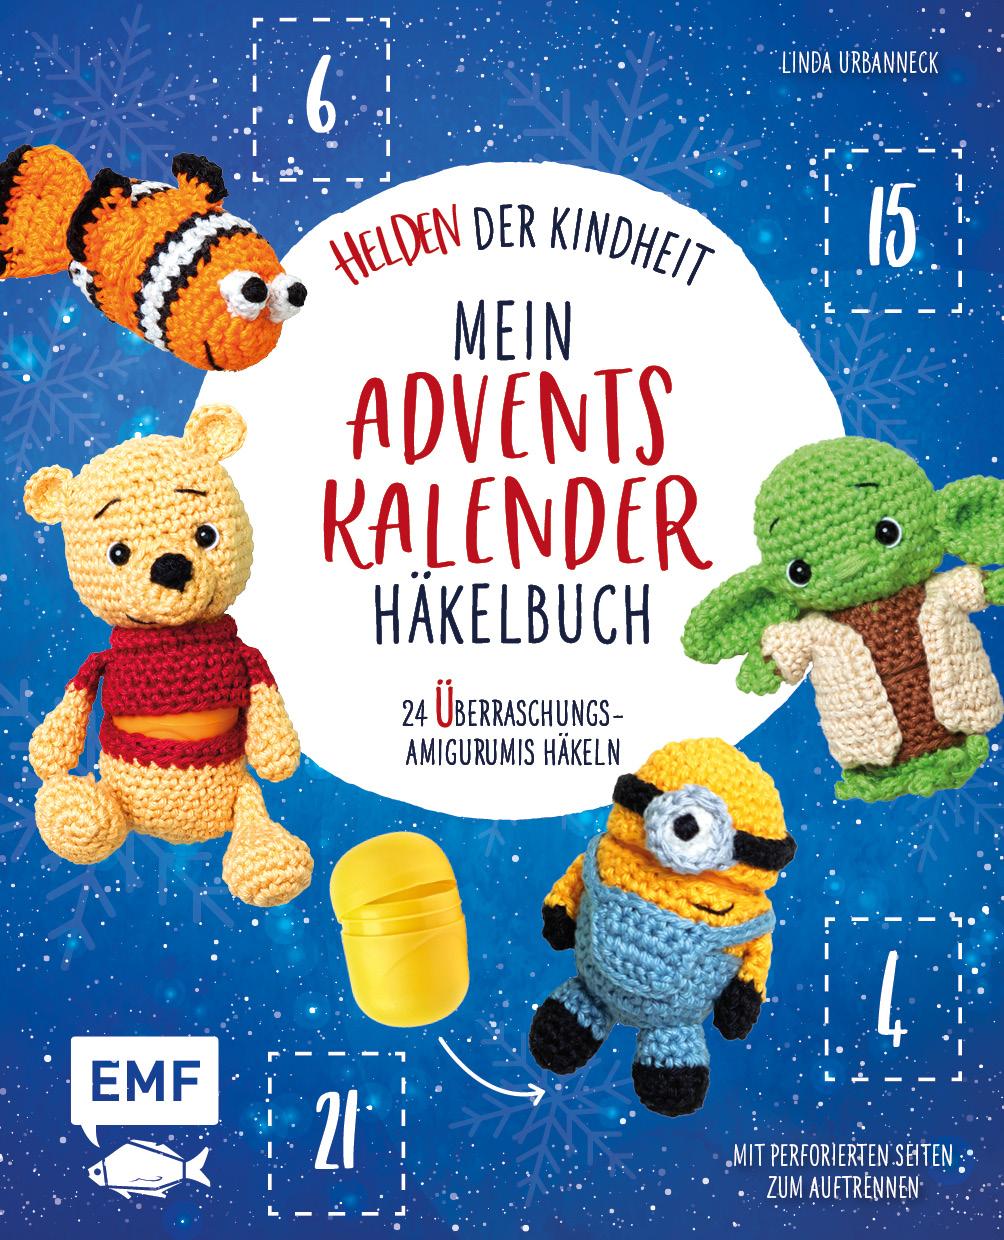 Kniha Mein Adventskalender-Häkelbuch: Helden der Kindheit 